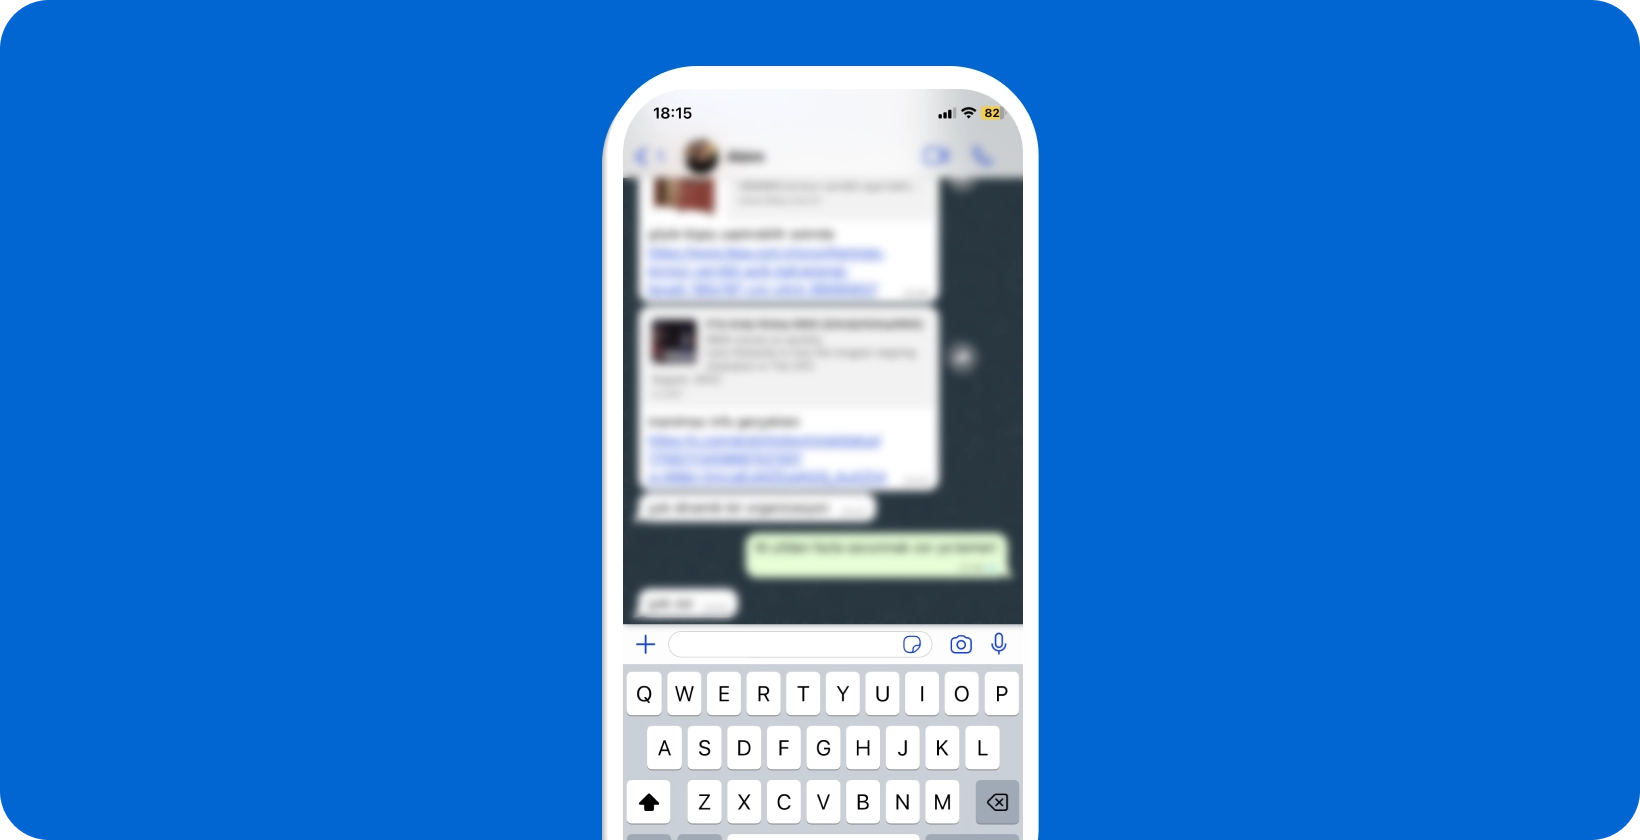 स्मार्टफोन खुले कीबोर्ड के साथ एक सक्रिय WhatsApp वार्तालाप प्रदर्शित करता है, जो आवाज श्रुतलेख के लिए तैयार है।